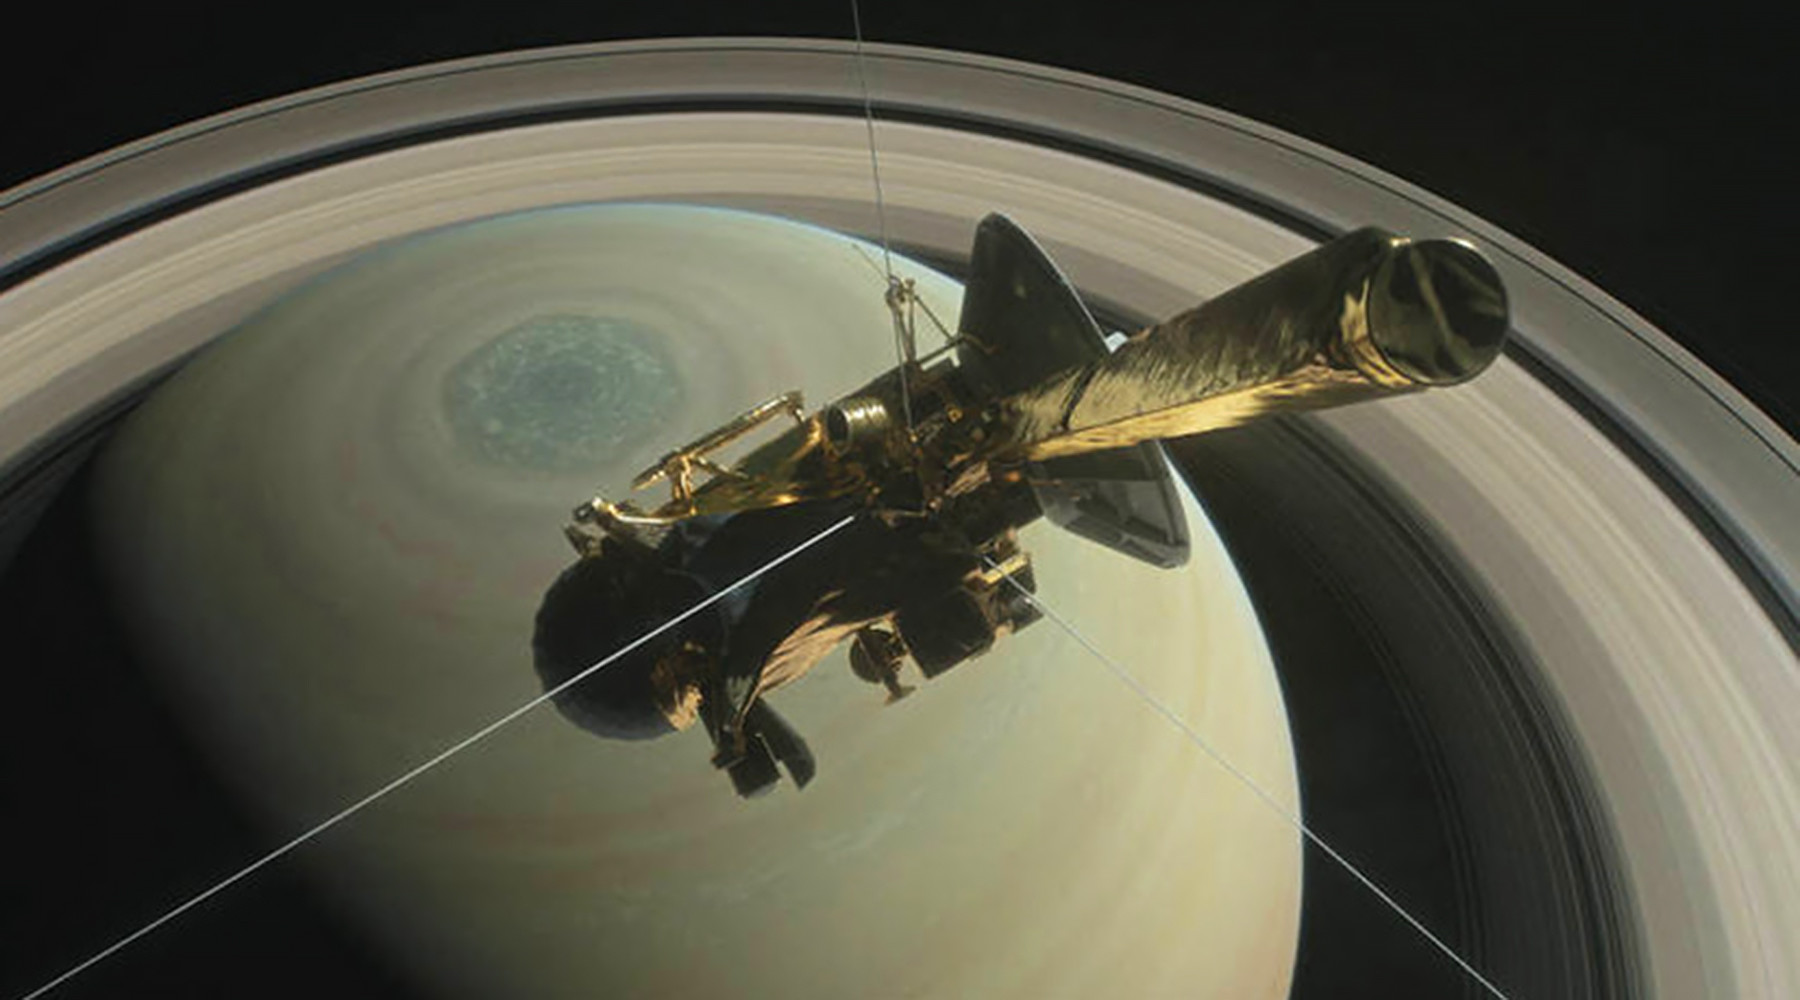 Межпланетная станция сгорела в атмосфере Сатурна 